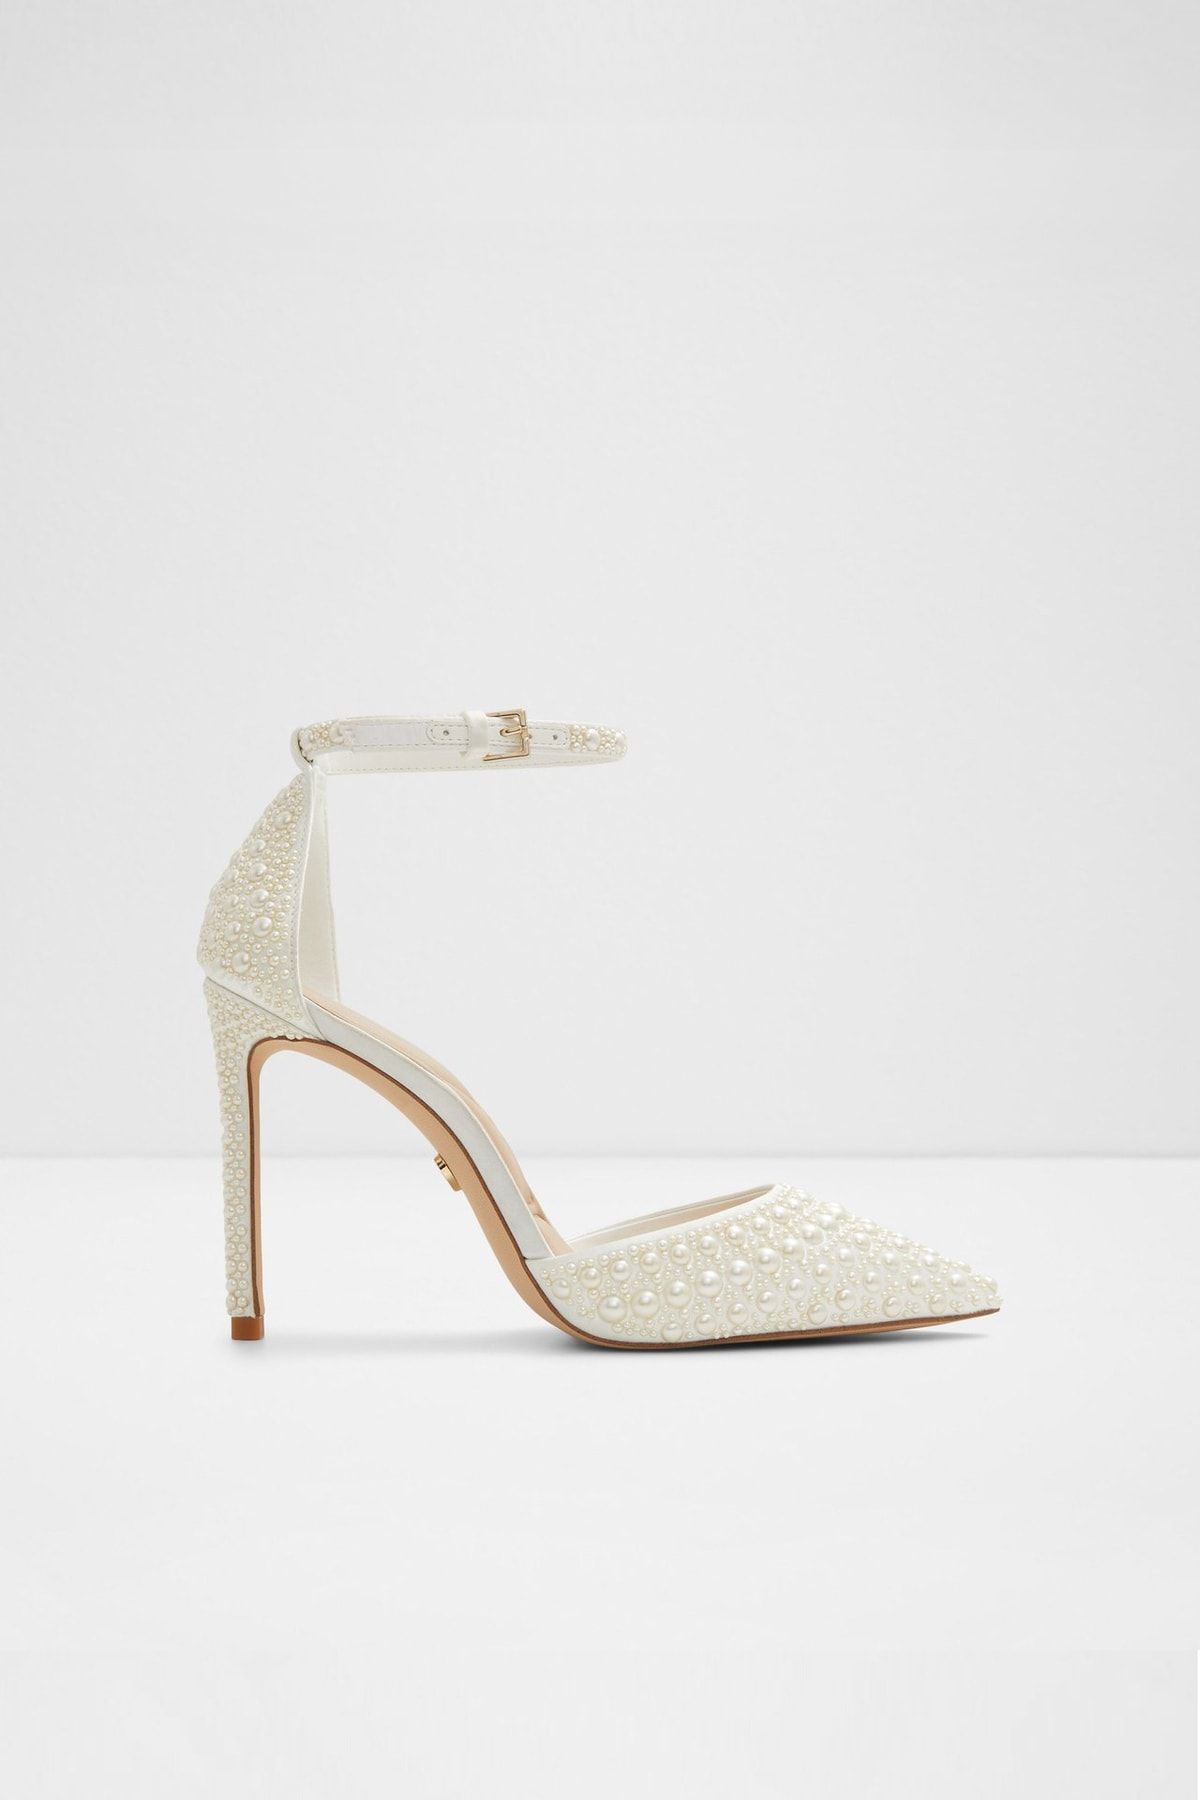 Aldo Derperla - Beyaz Kadın Topuklu Ayakkabı